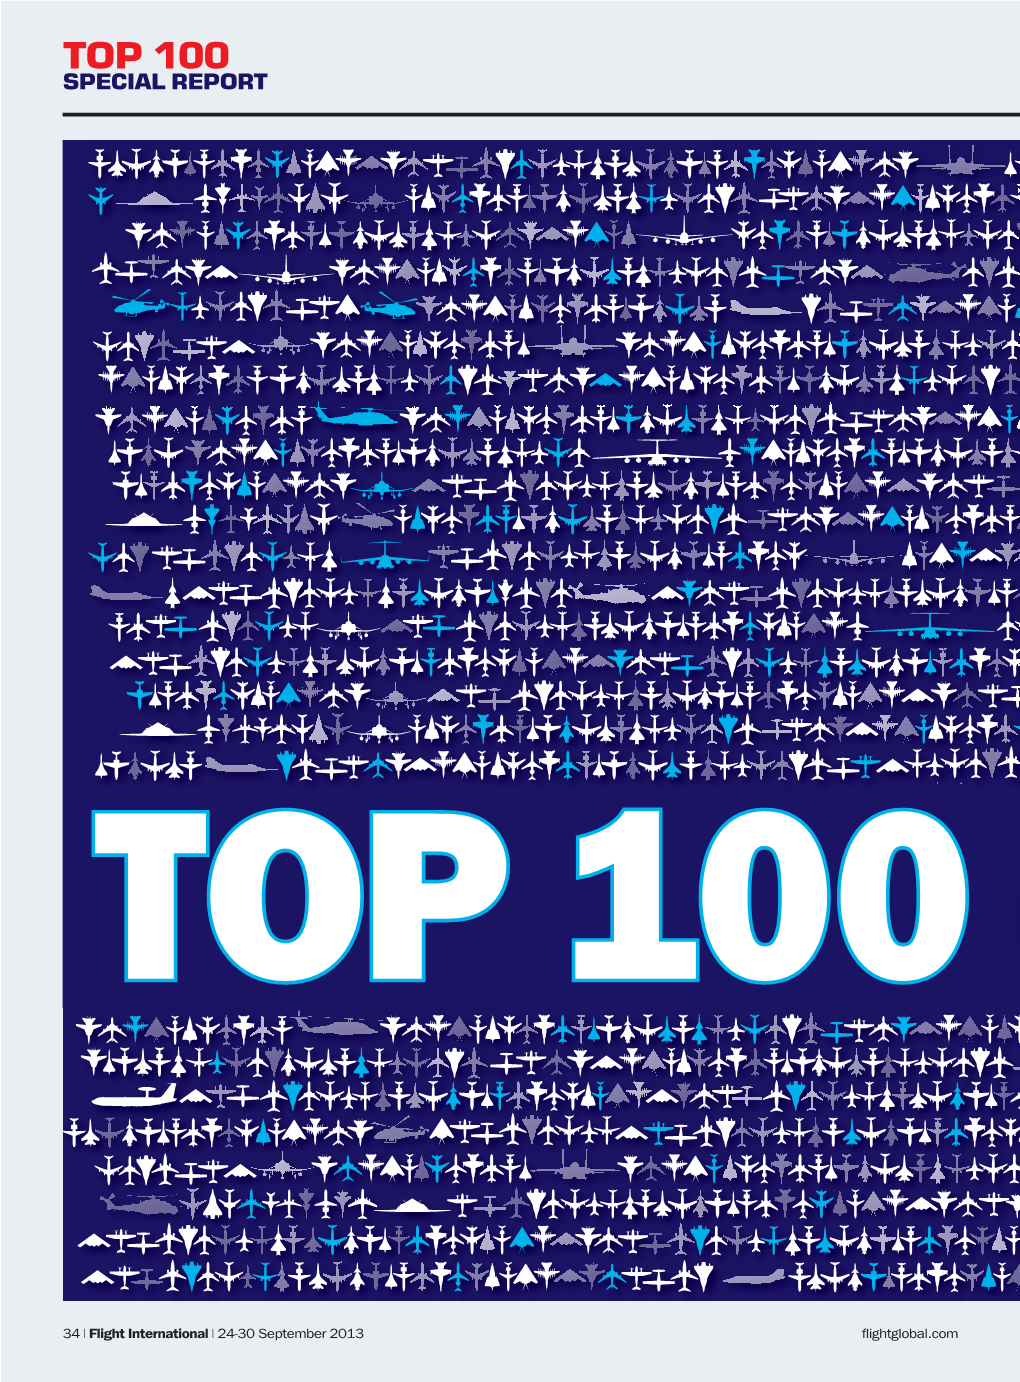 Top 100 Special Report